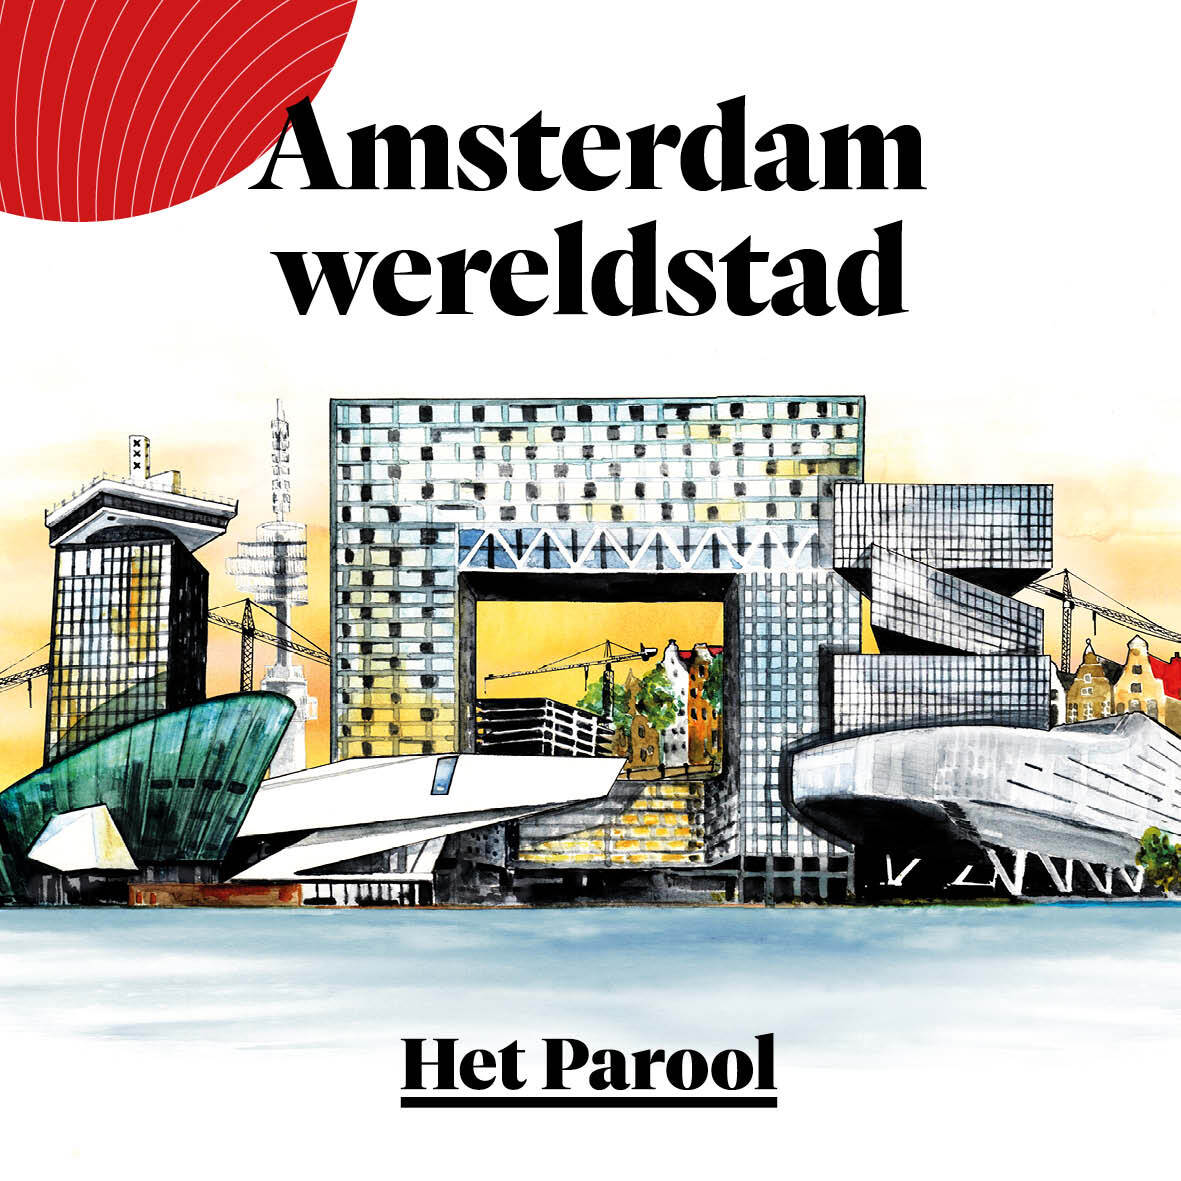 Waarom Amsterdamse woningen soms gevaarlijk vol spullen staan